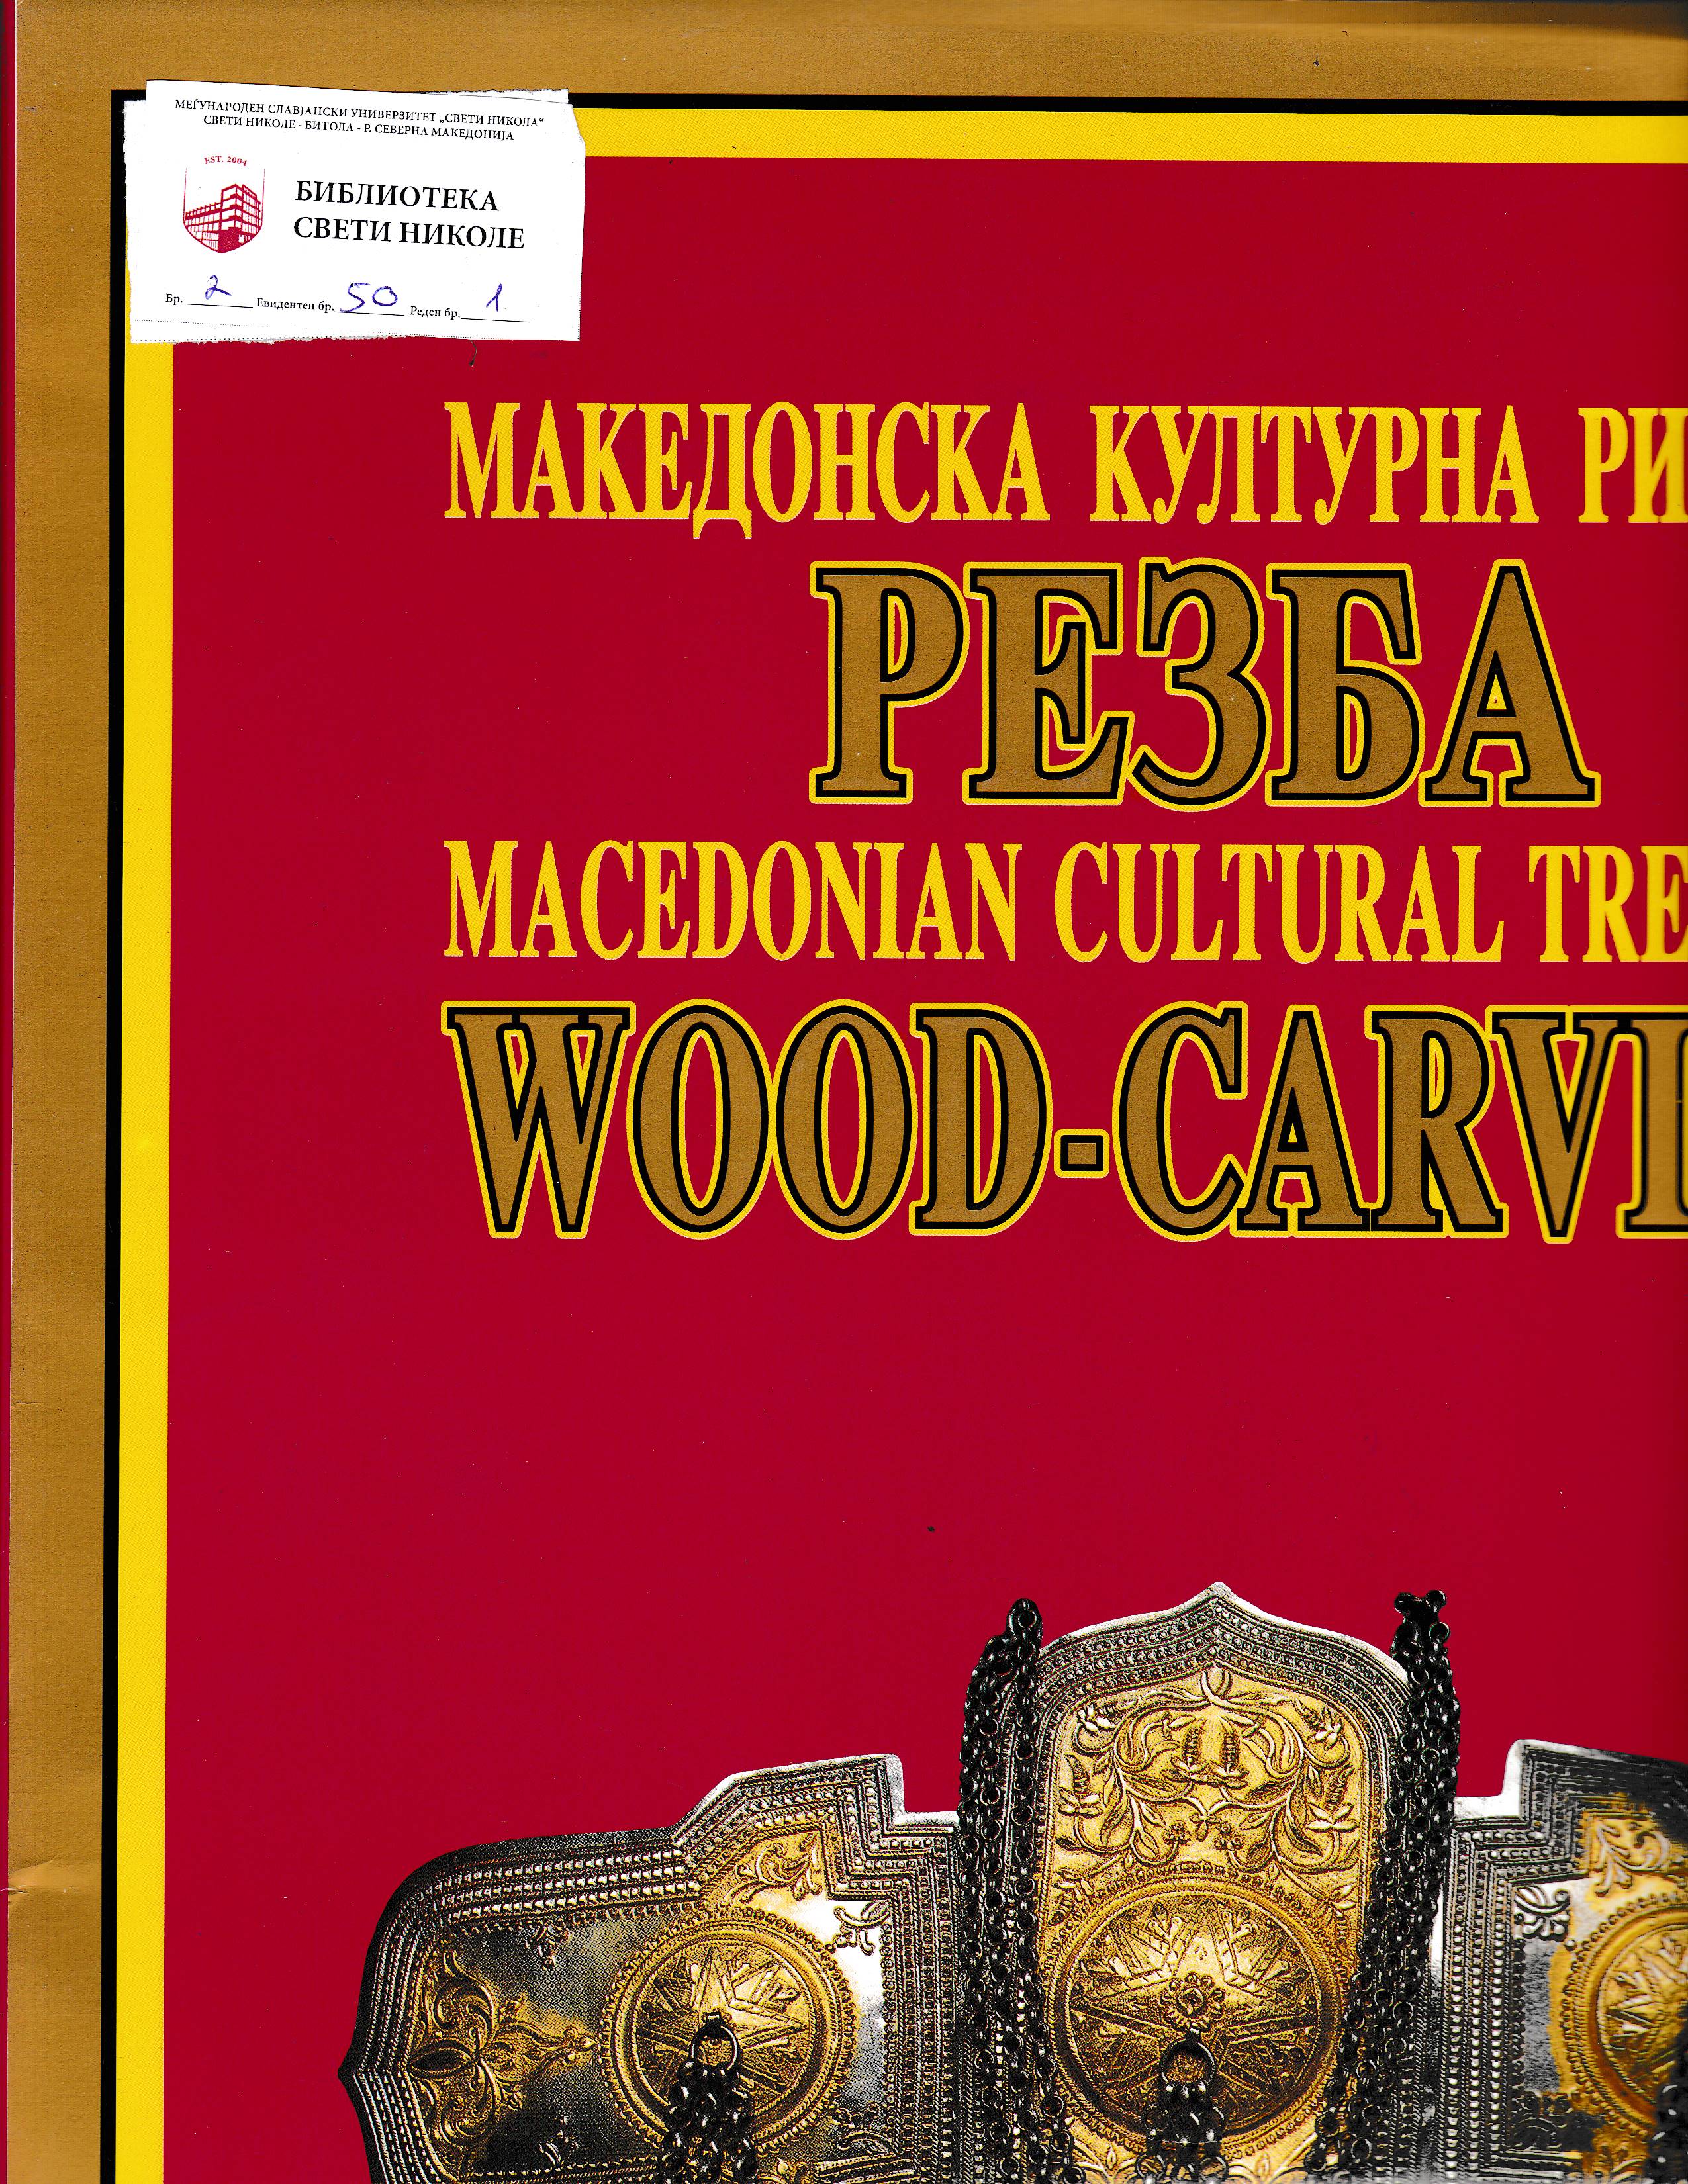 Македонска културна ризница резба